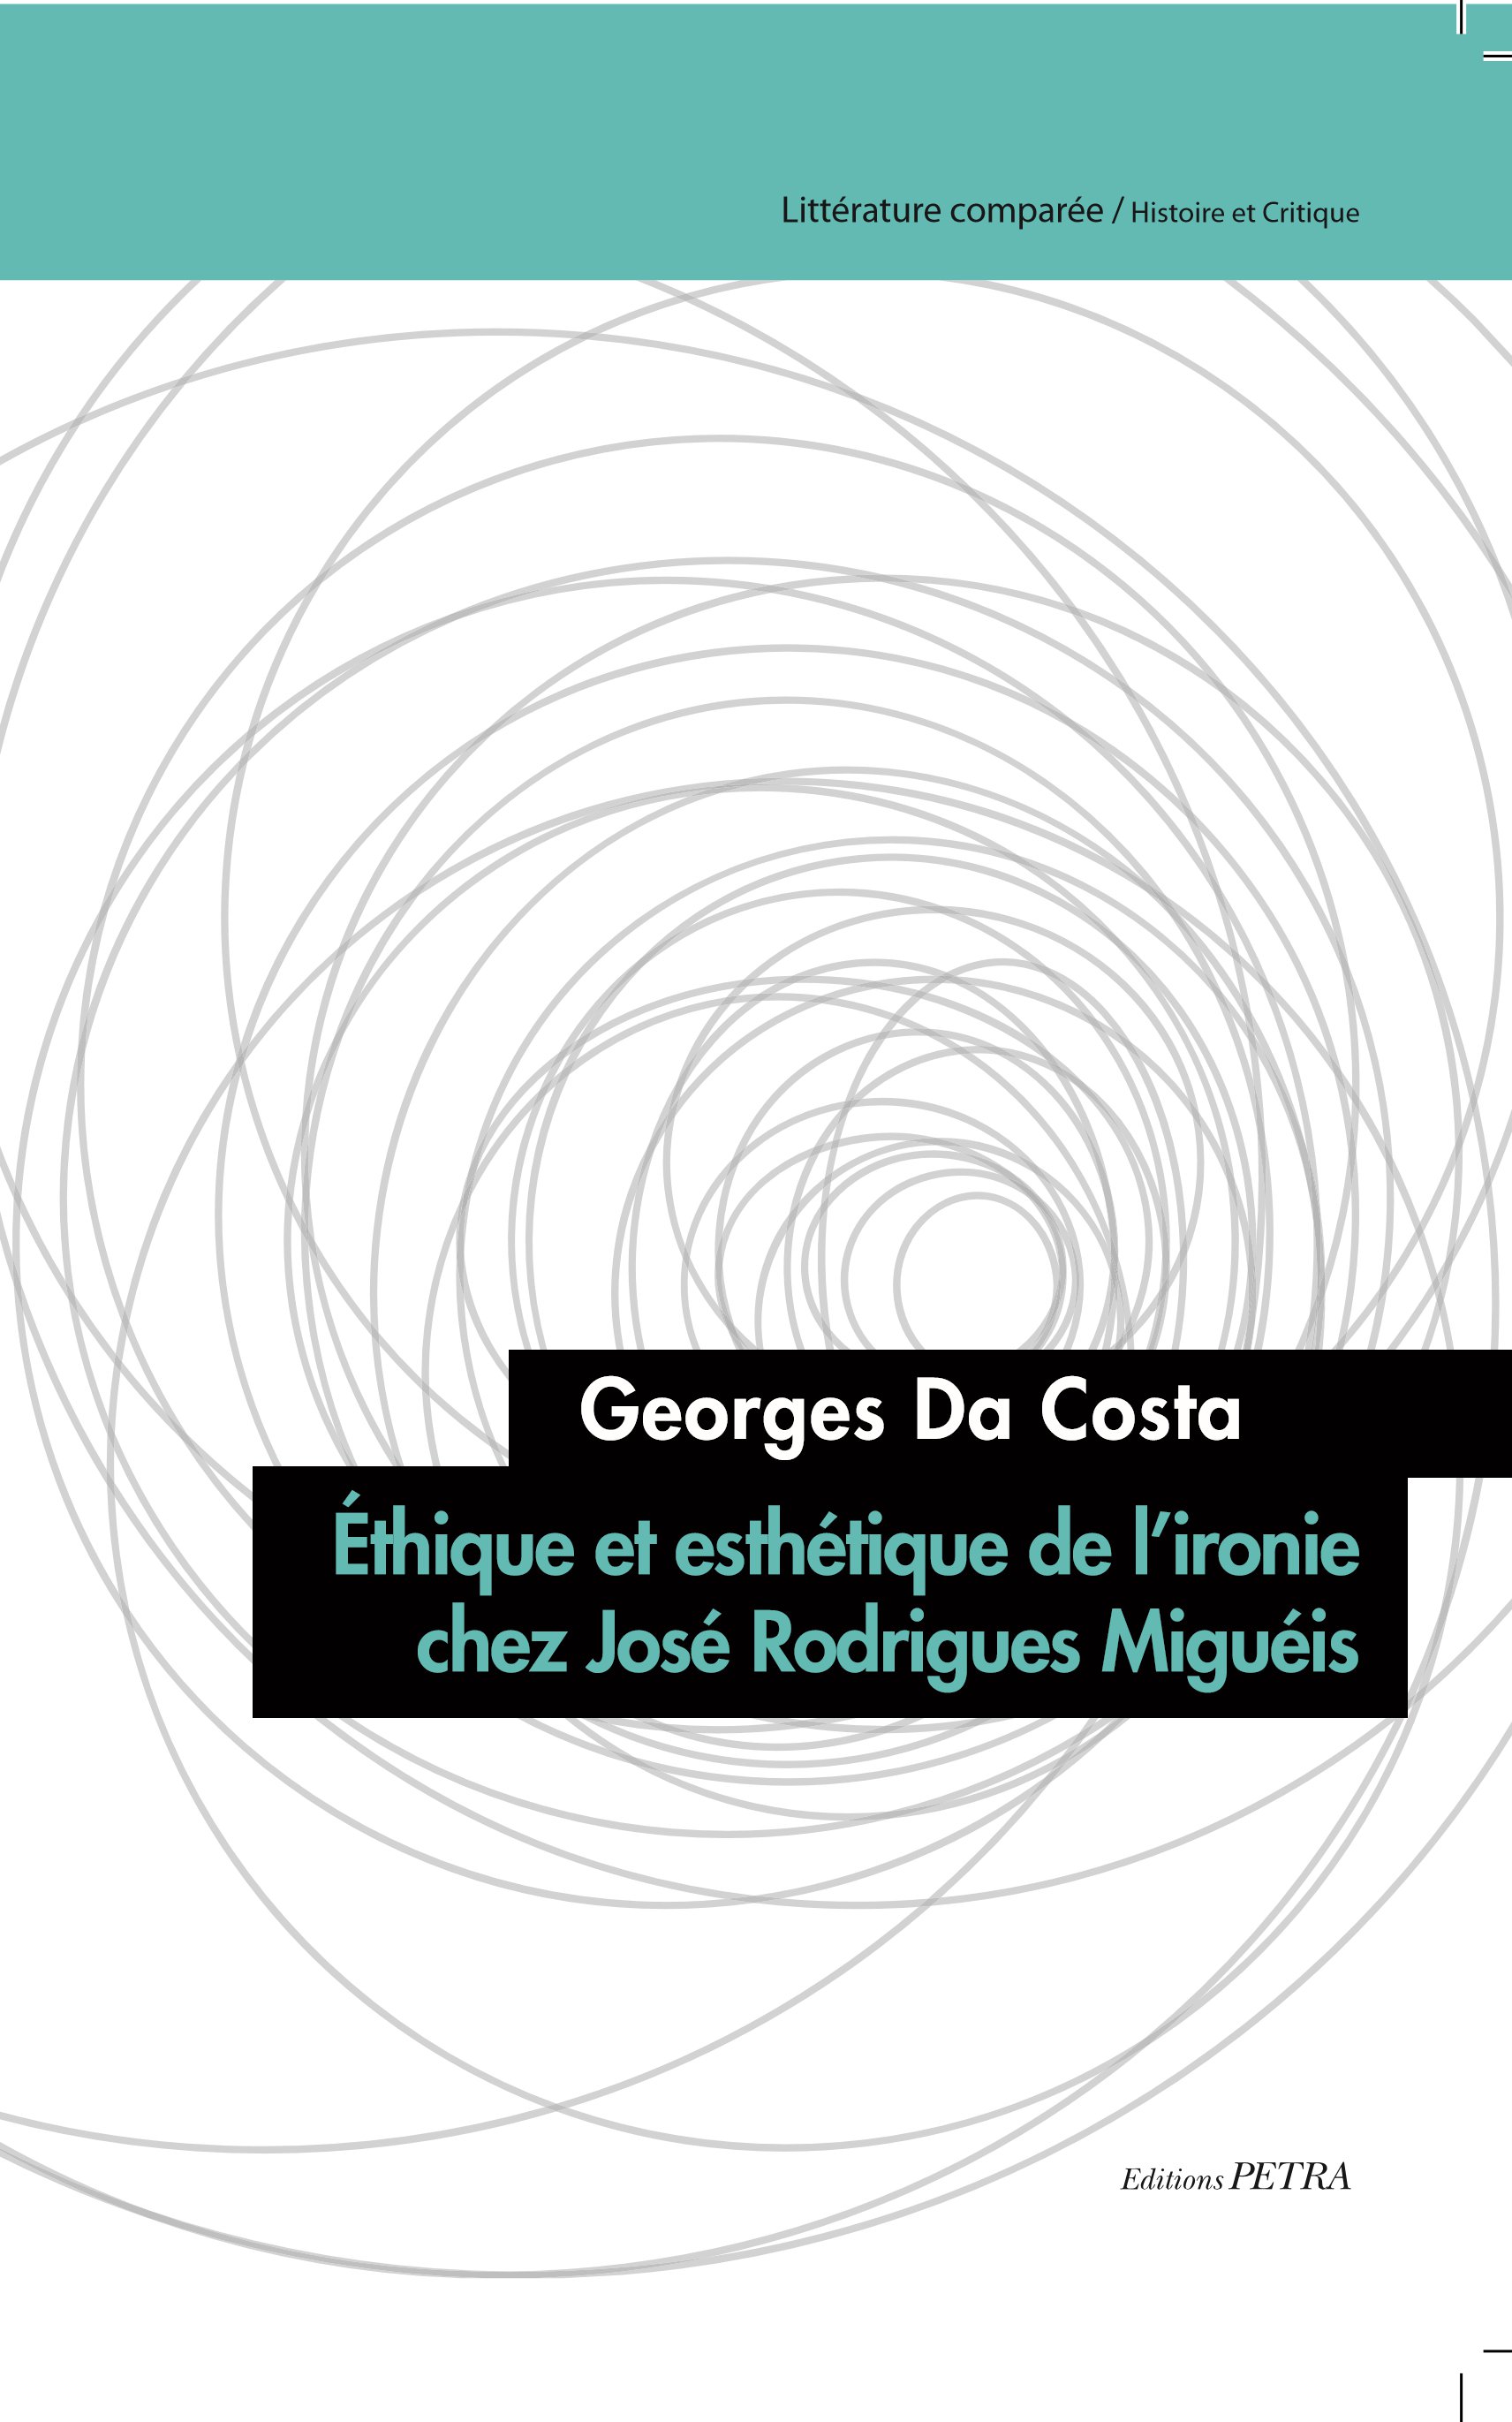 G. Da Costa, Éthique et esthétique de l’ironie chez J. Rodrigues Miguéis